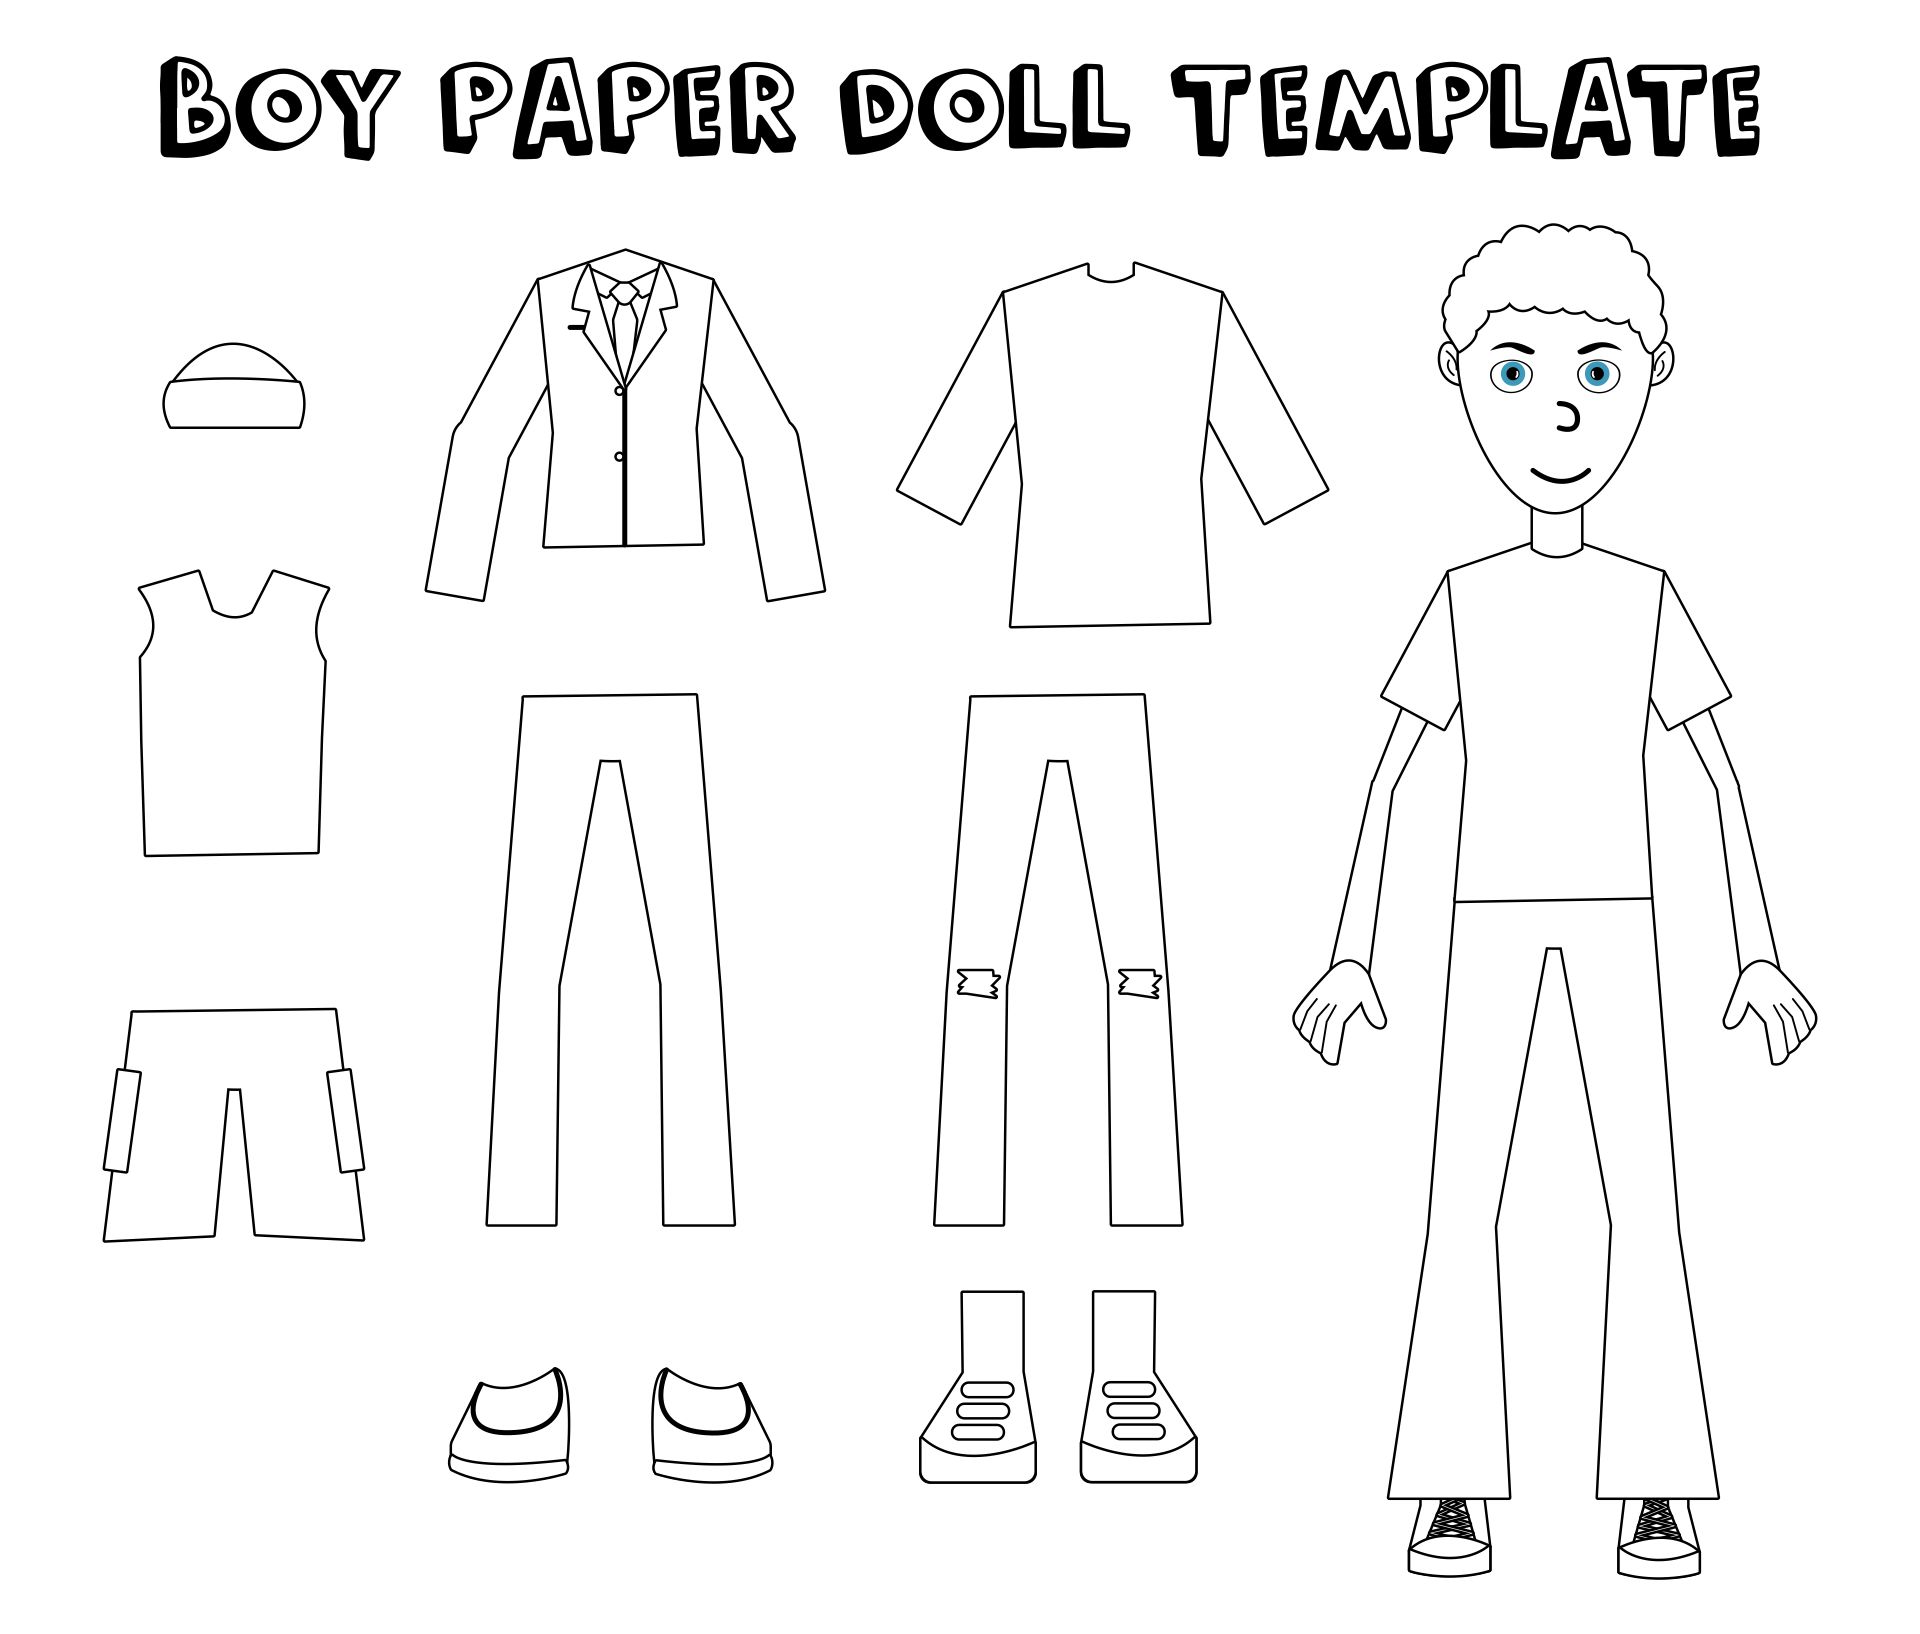 Fun Printable Boy Paper Dolls